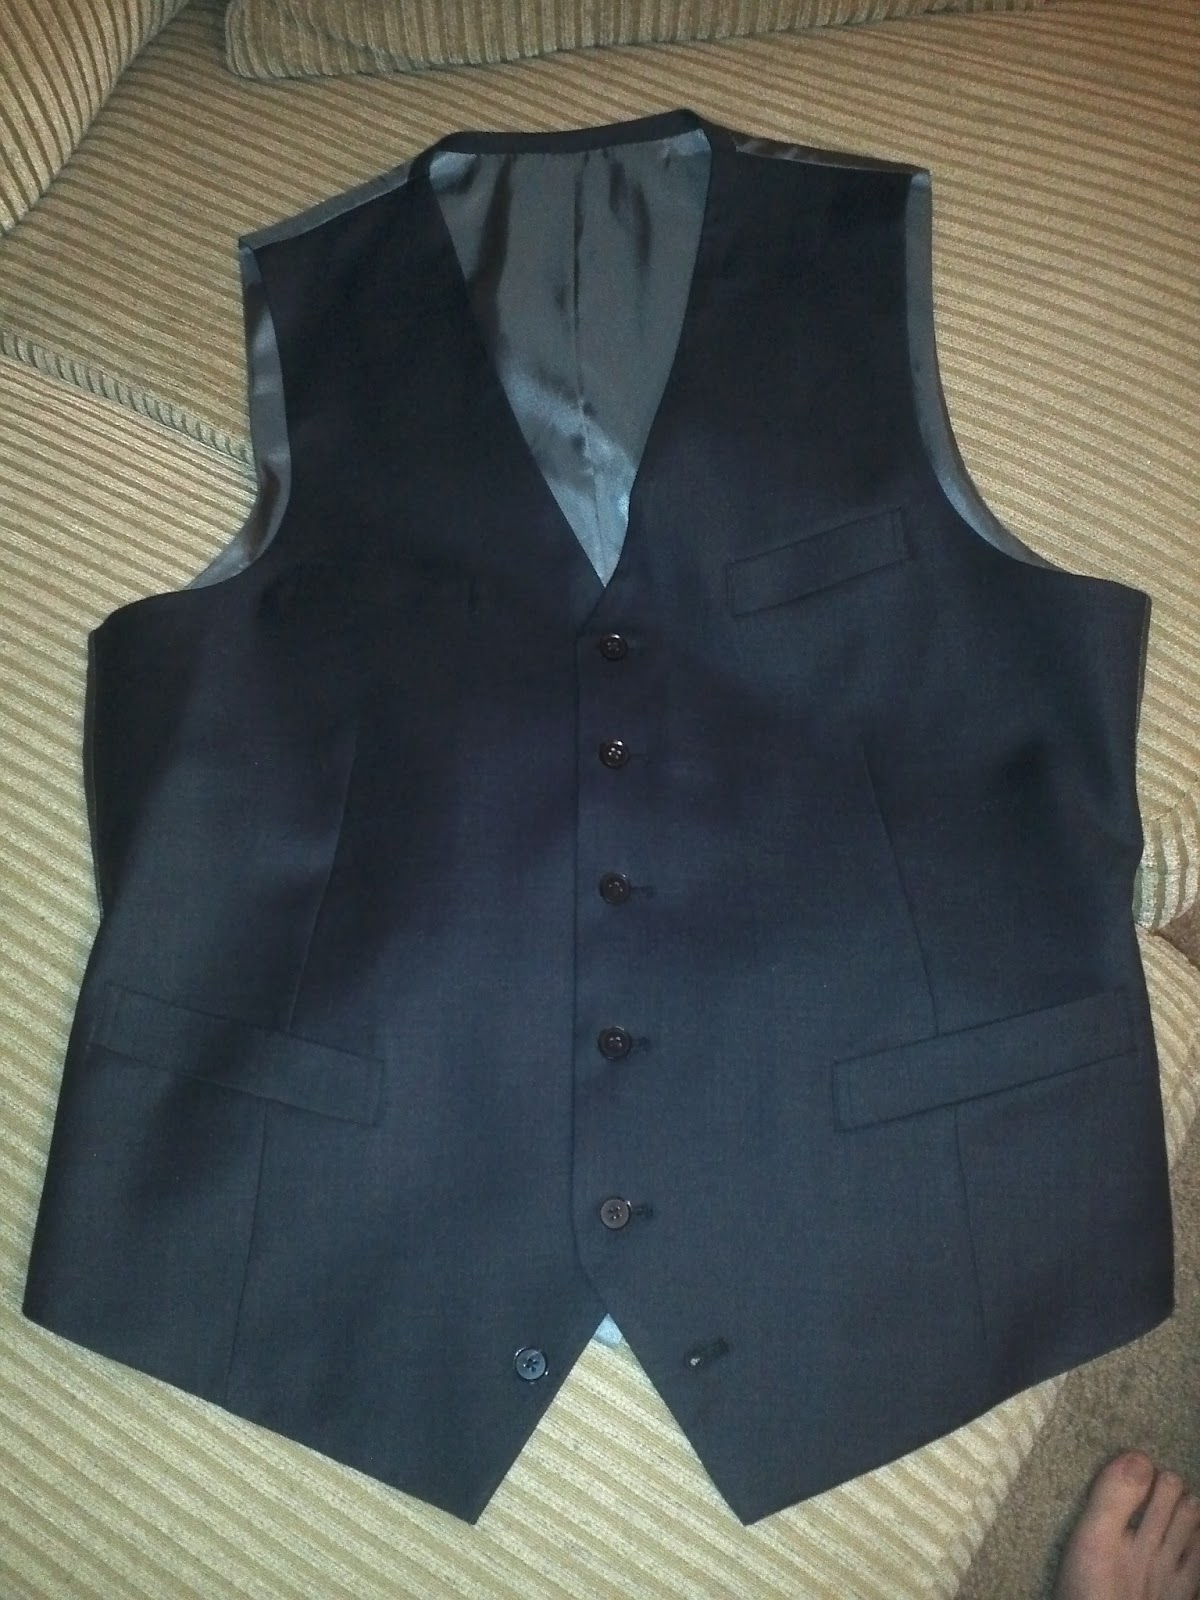 Review: Black Lapel Custom Clothiers (Solid Charcoal 3-Piece Suit)